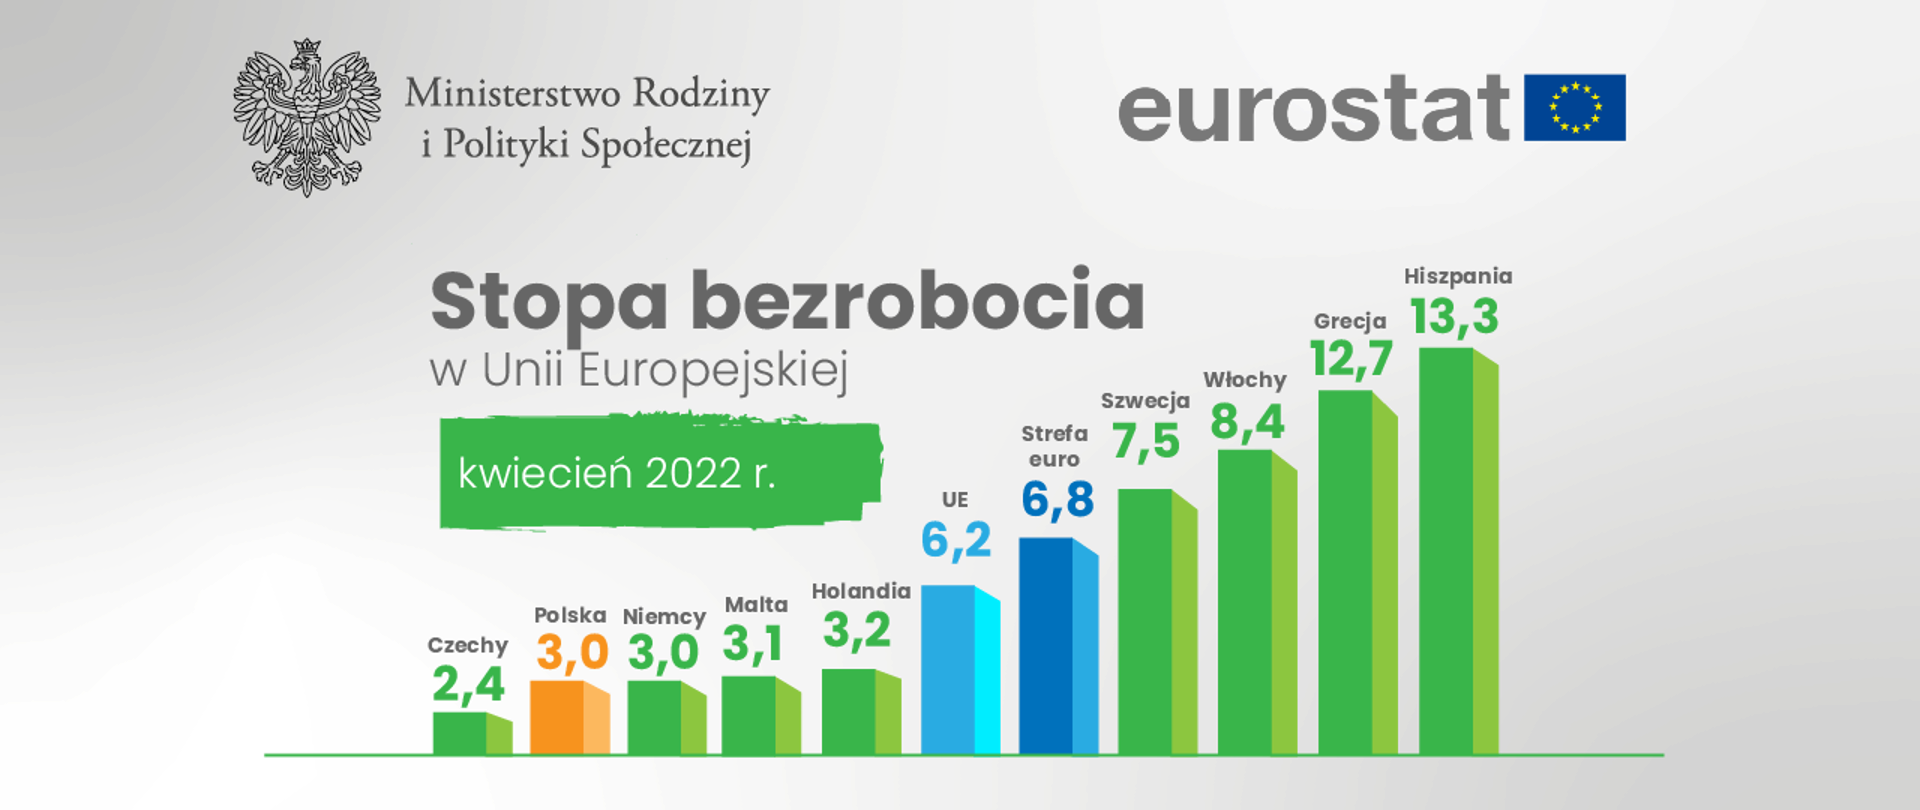 Eurostat: w kwietniu stopa bezrobocia w Polsce wyniosła 3 proc.